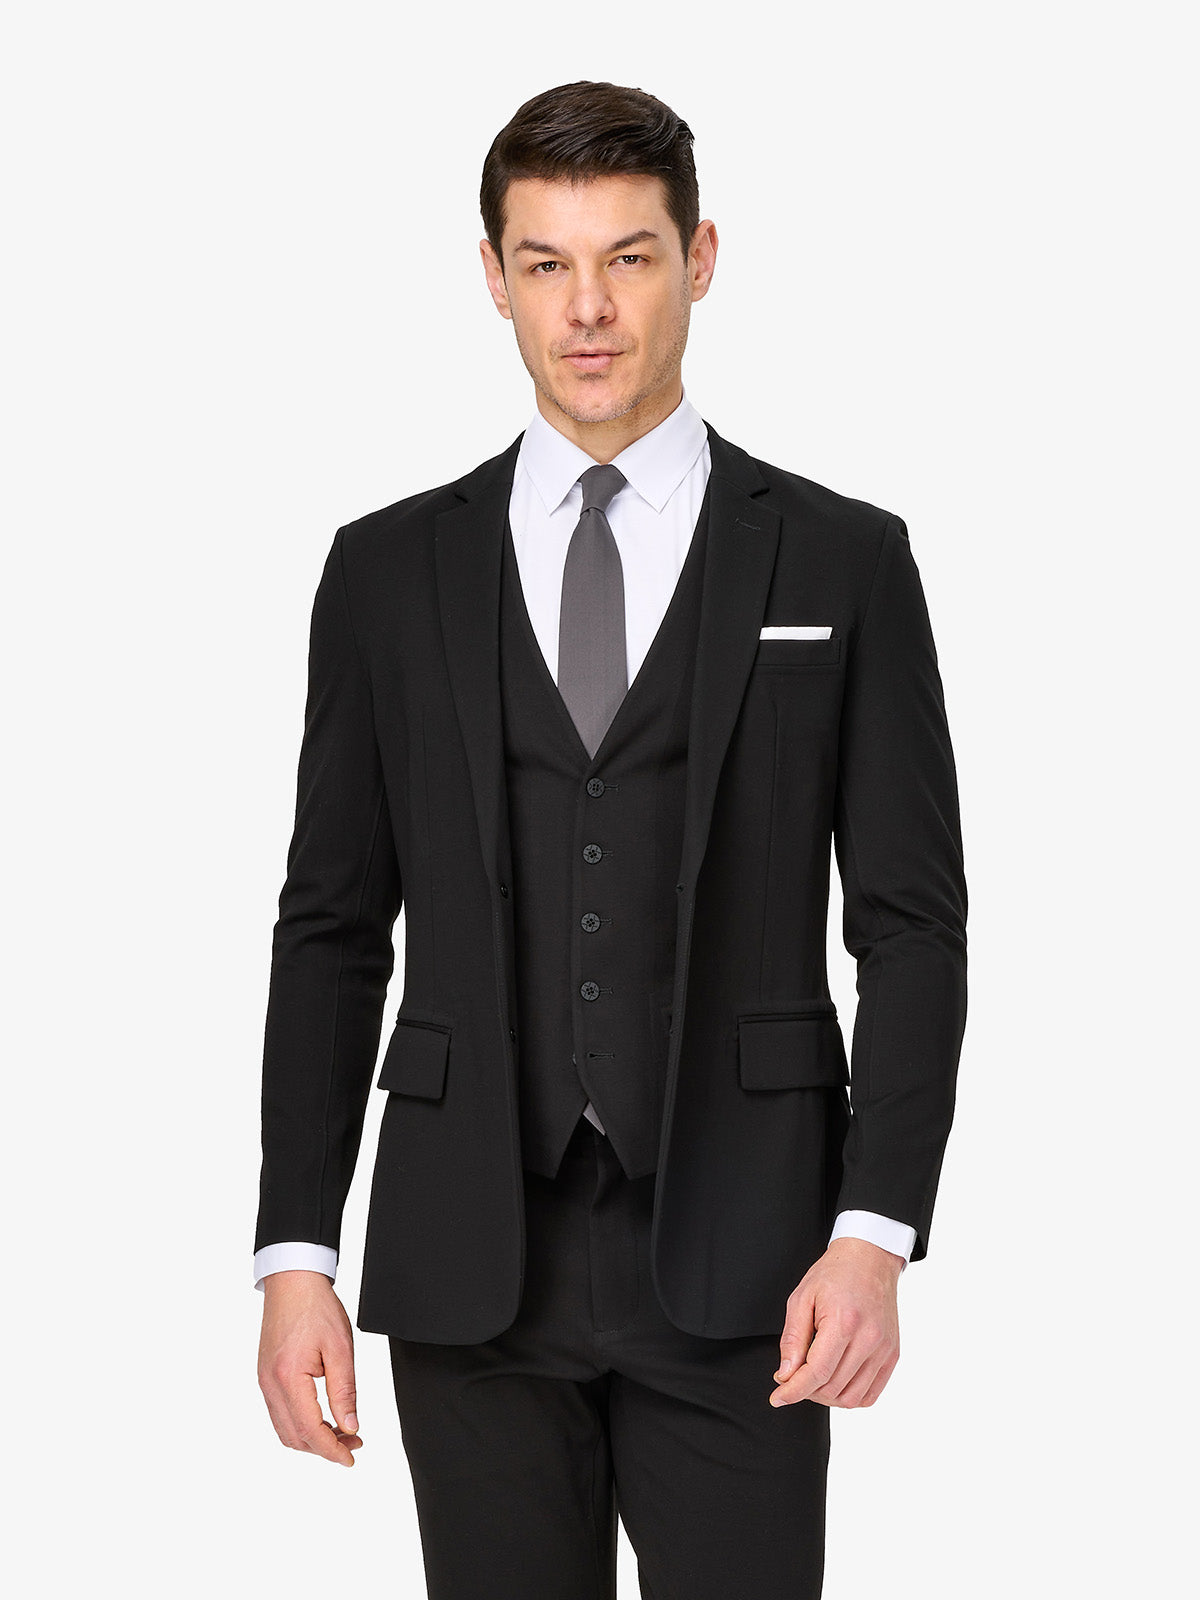 xSuit Black | Super Stretch & Machine Washable Men's Suit